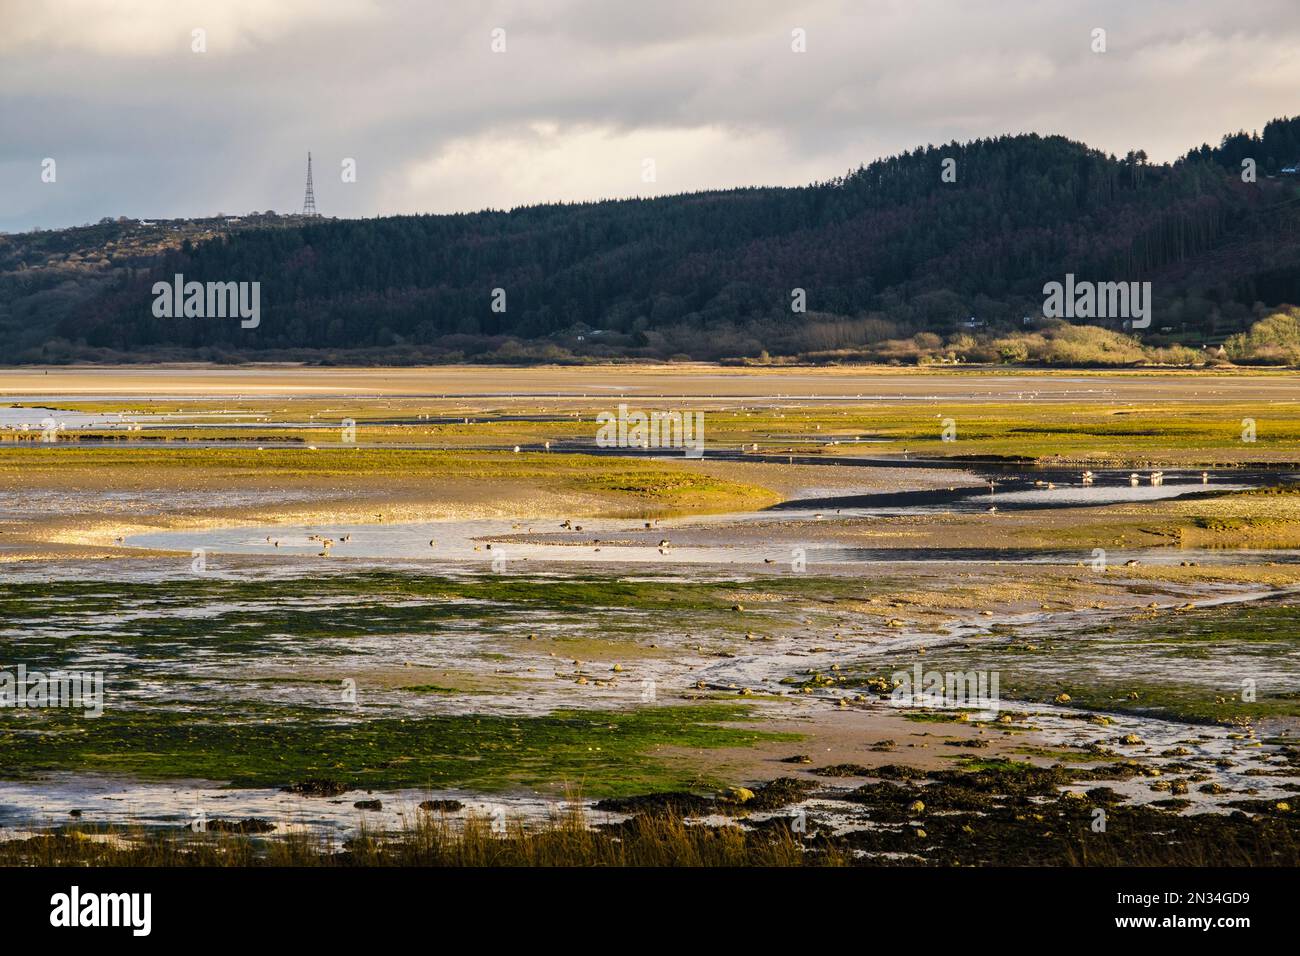 Les canards et les barboteurs se nourrissent dans le marais saltmarsh marécageux lorsque la marée arrive dans la baie de Red Wharf (Traeth Coch), Benllech, île d'Anglesey (Ynys mon), pays de Galles Banque D'Images